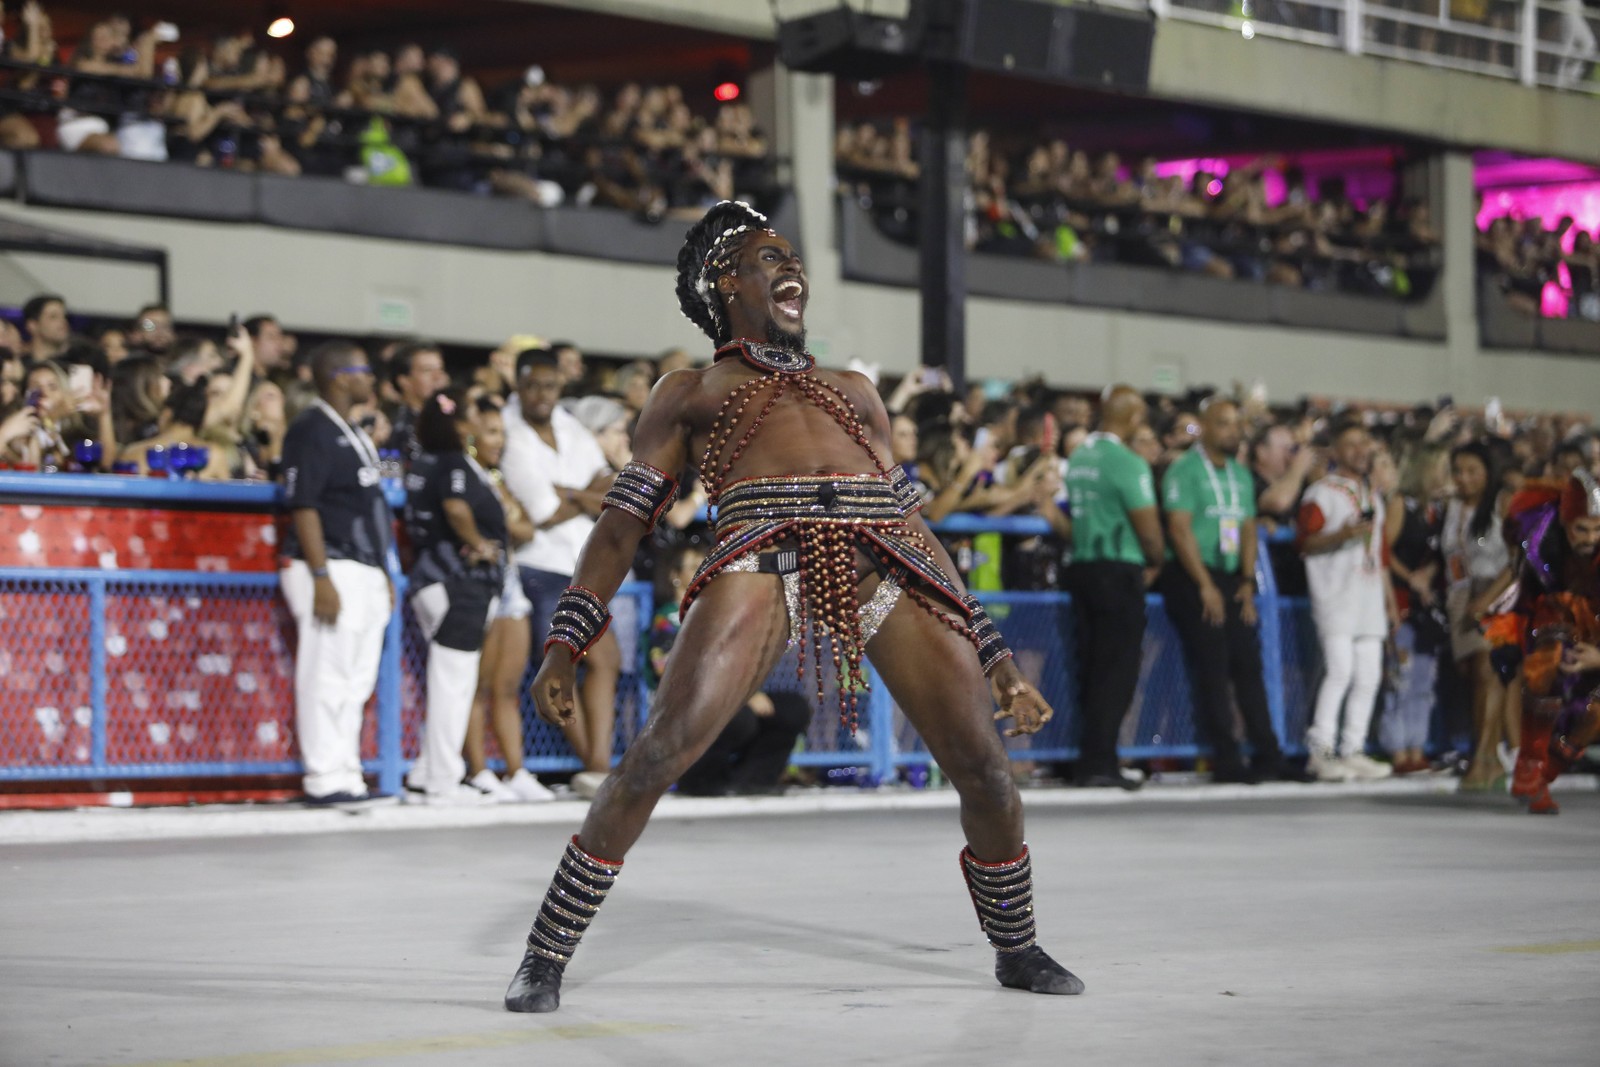 Dançarino da comissão de frente que representa Exu, orixá cantado pela escola na avenidaAgência O Globo